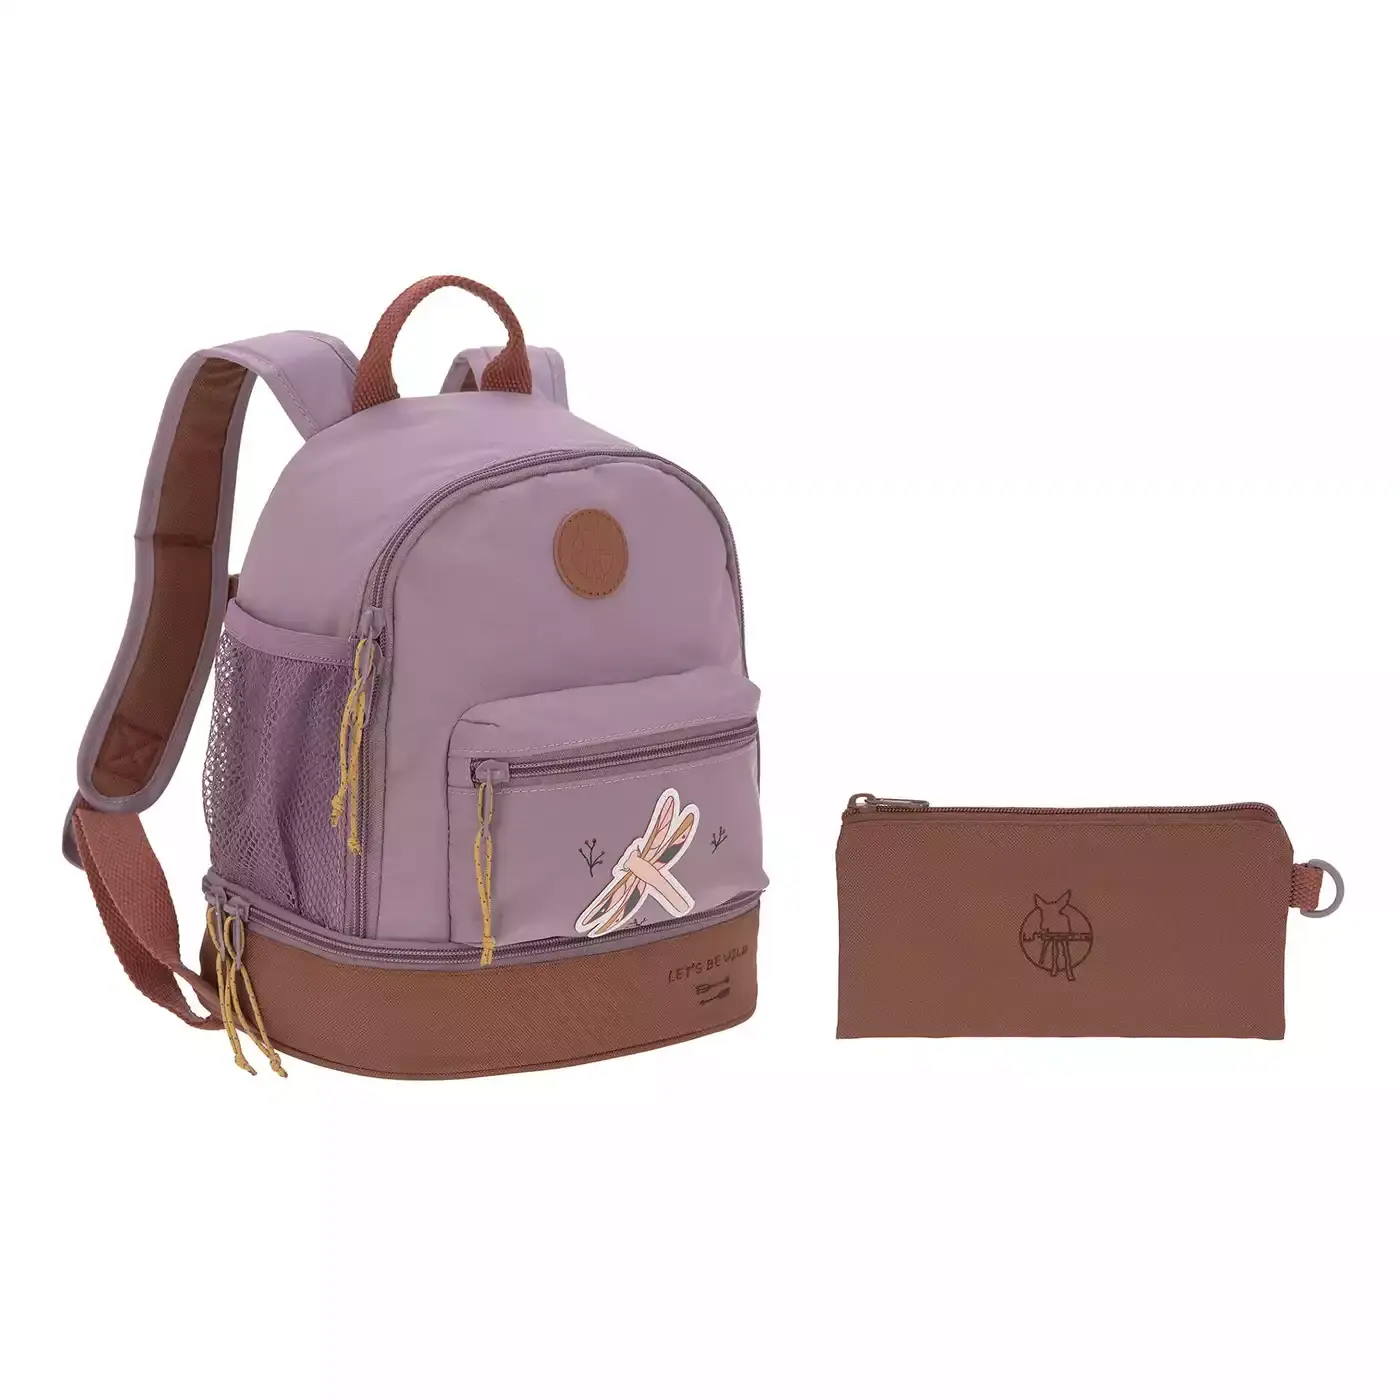 Mini Backpack Adventure Dragonfly Light Purple LÄSSIG Lila 2000580097405 1